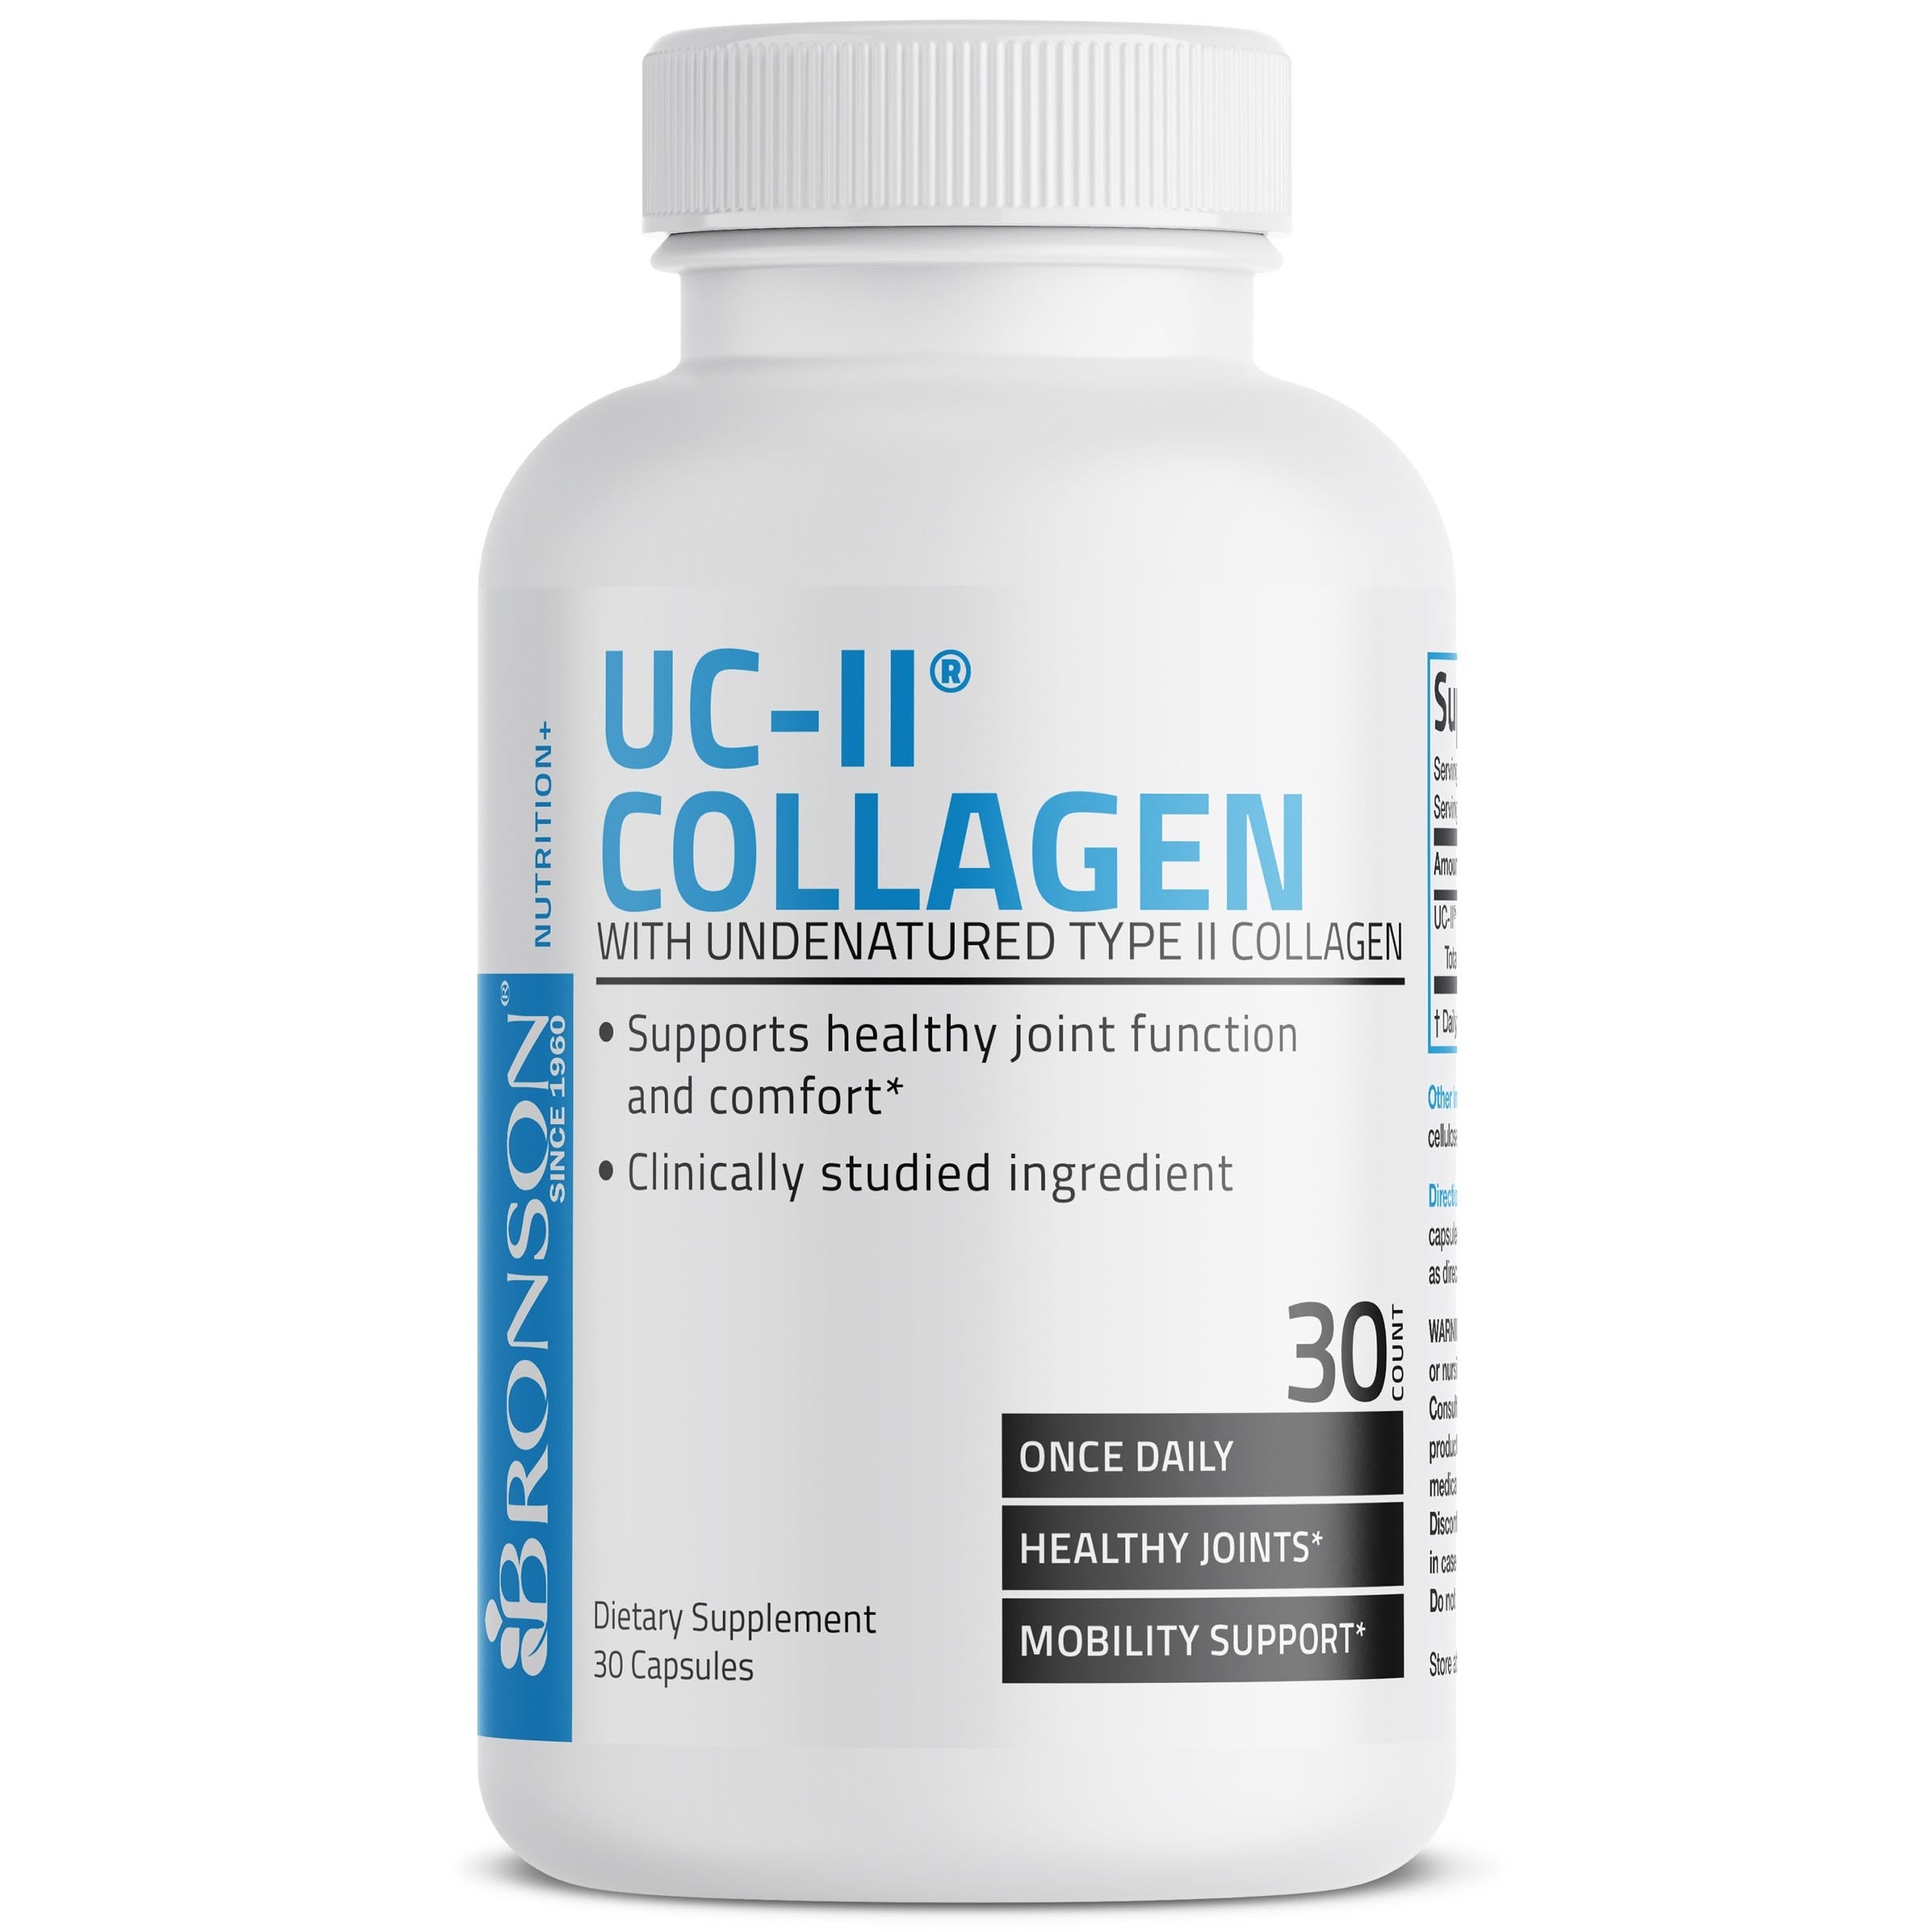 UC-II® Collagen with Undenatured Type II Collagen - 30 Capsules view 2 of 6